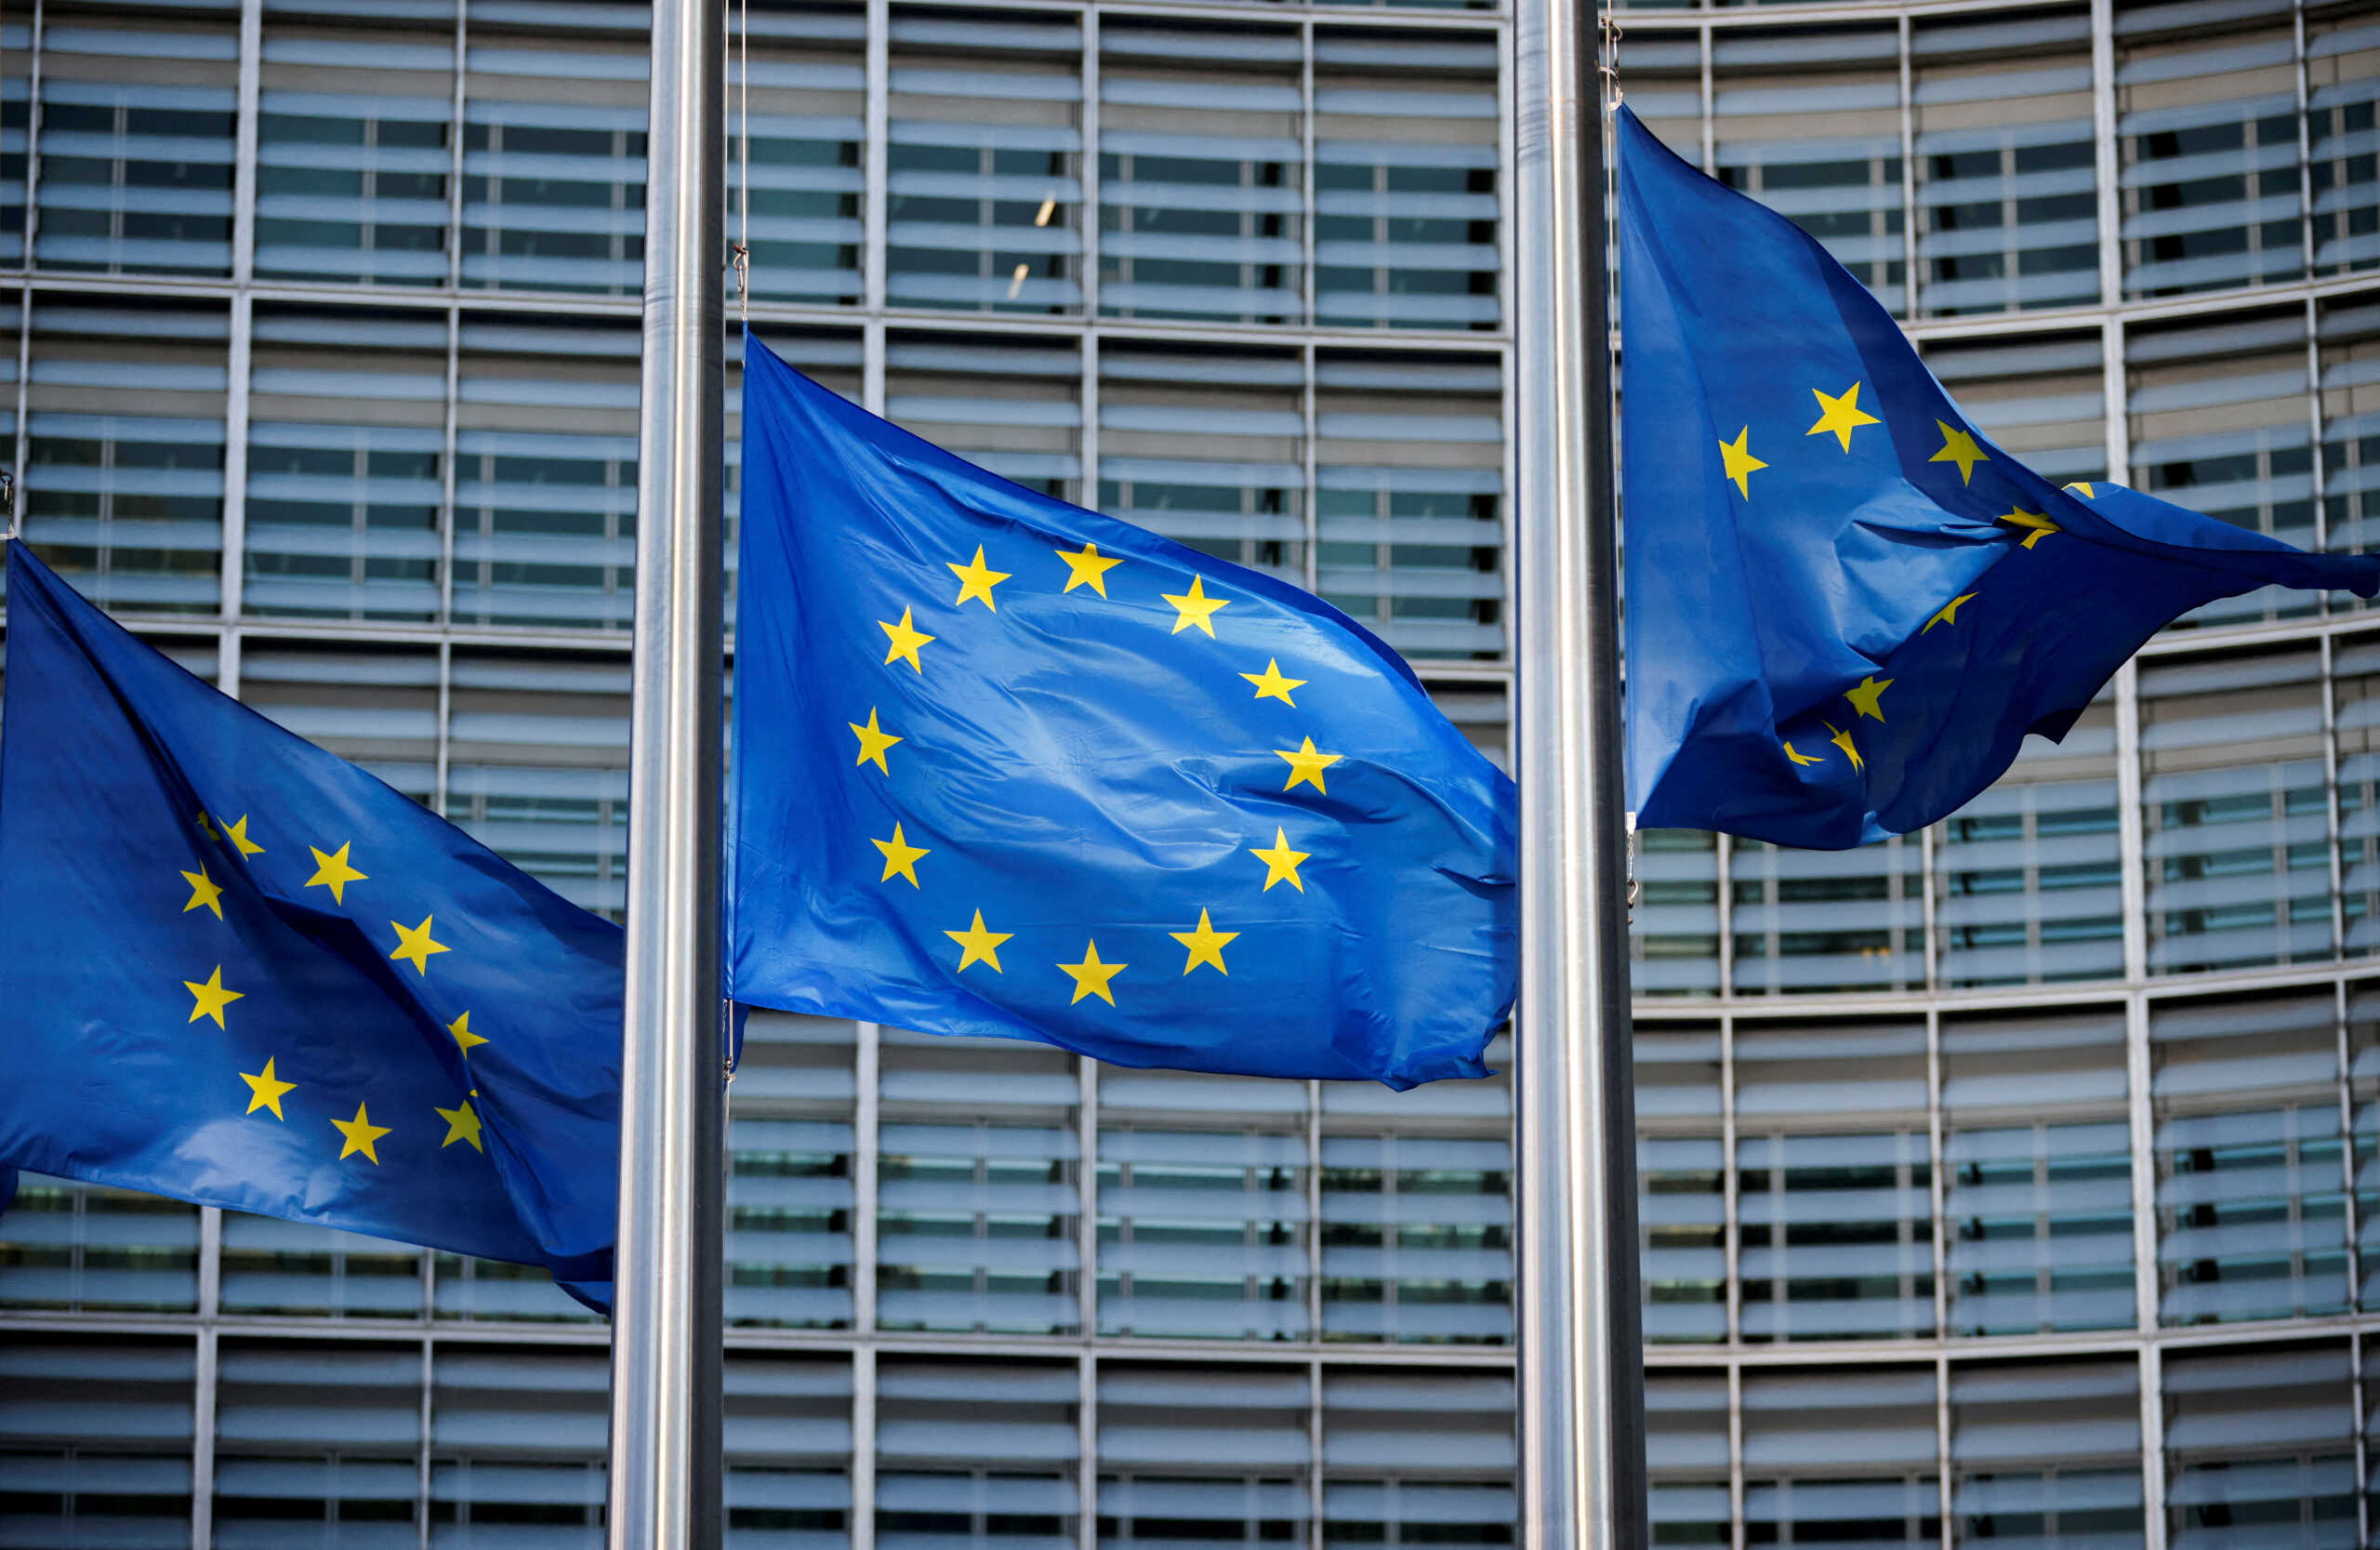 ΕΕ: Σε αναζήτηση πόρων για εξοπλισμούς – Η ένωση κεφαλαιαγορών θα χρηματοδοτήσει την ευρωπαϊκή άμυνα